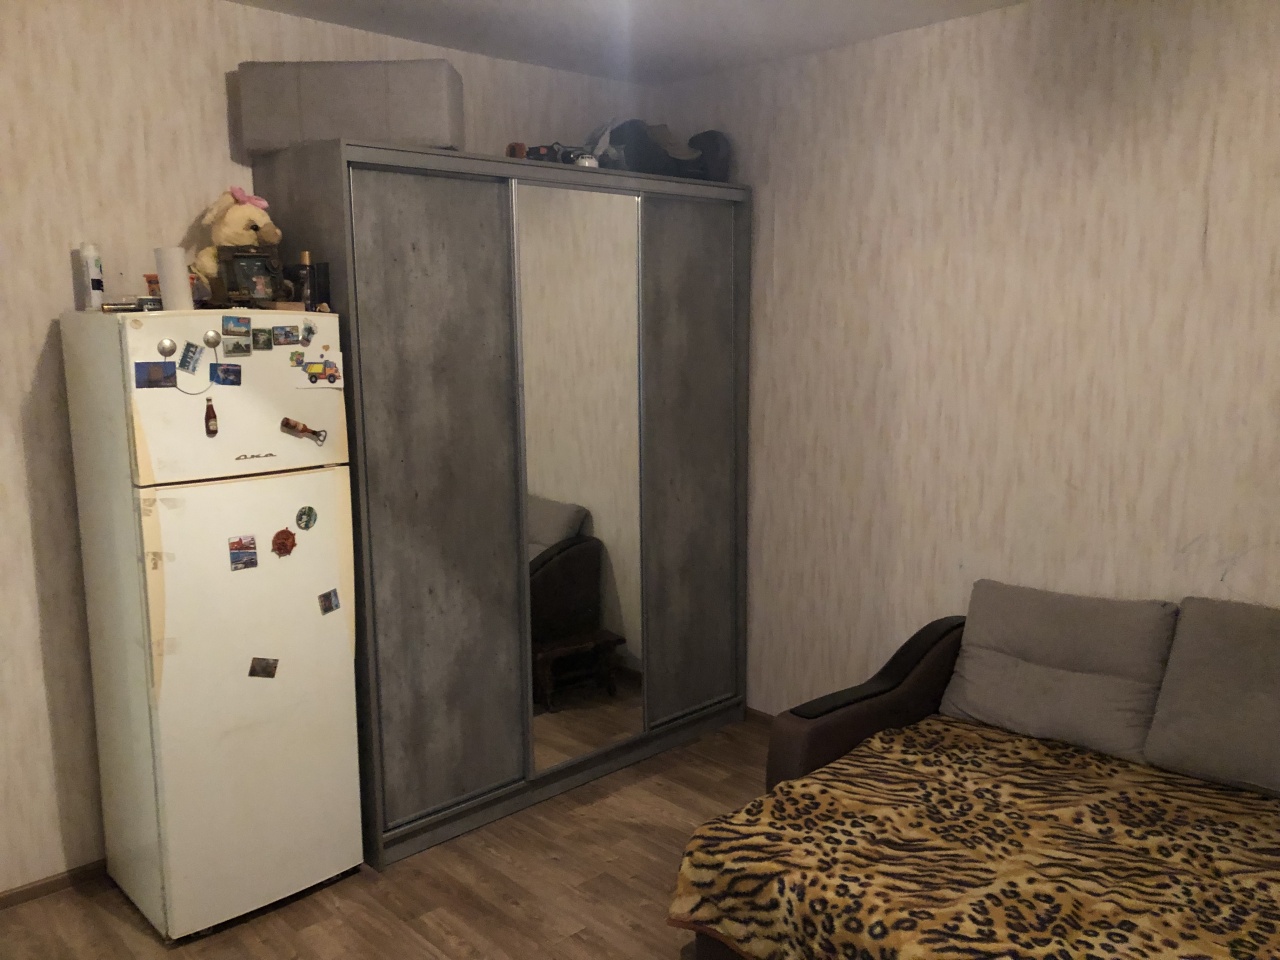 Трехкомнатная квартира в г. Мытищи, ул. Академика Каргина, 72.86  кв.м, 2/25эт.